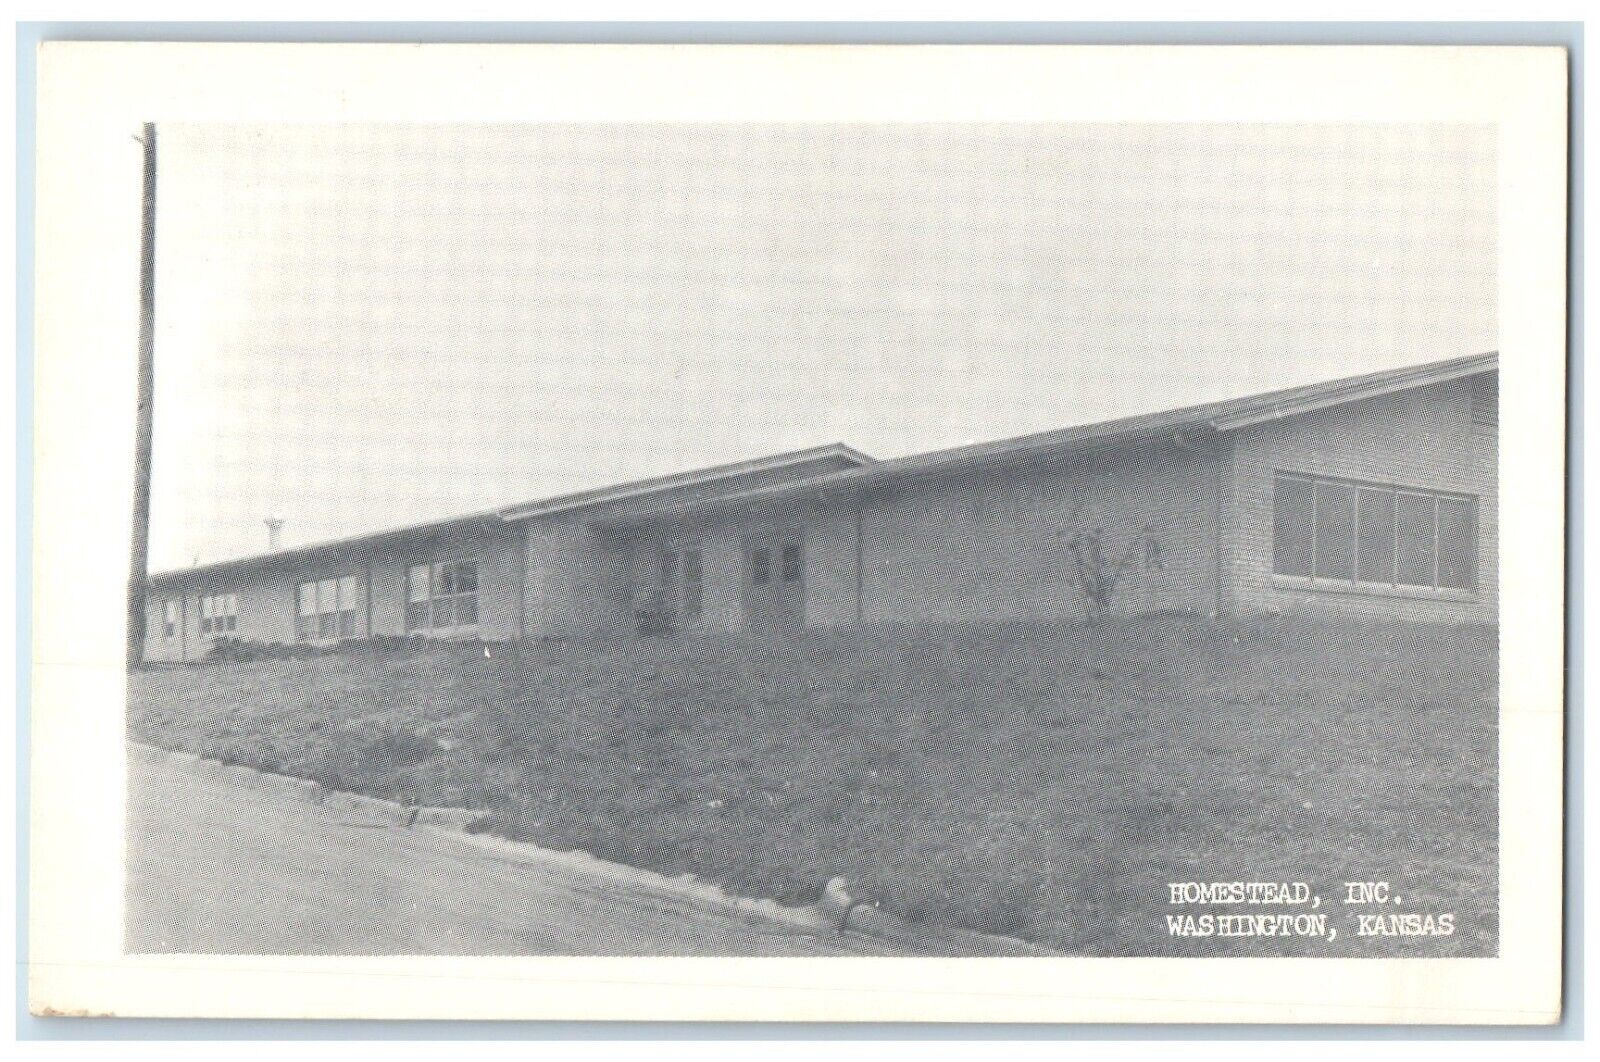 c1940's Homestead Incorporation Washington Kansas KS Unposted Vintage Postcard